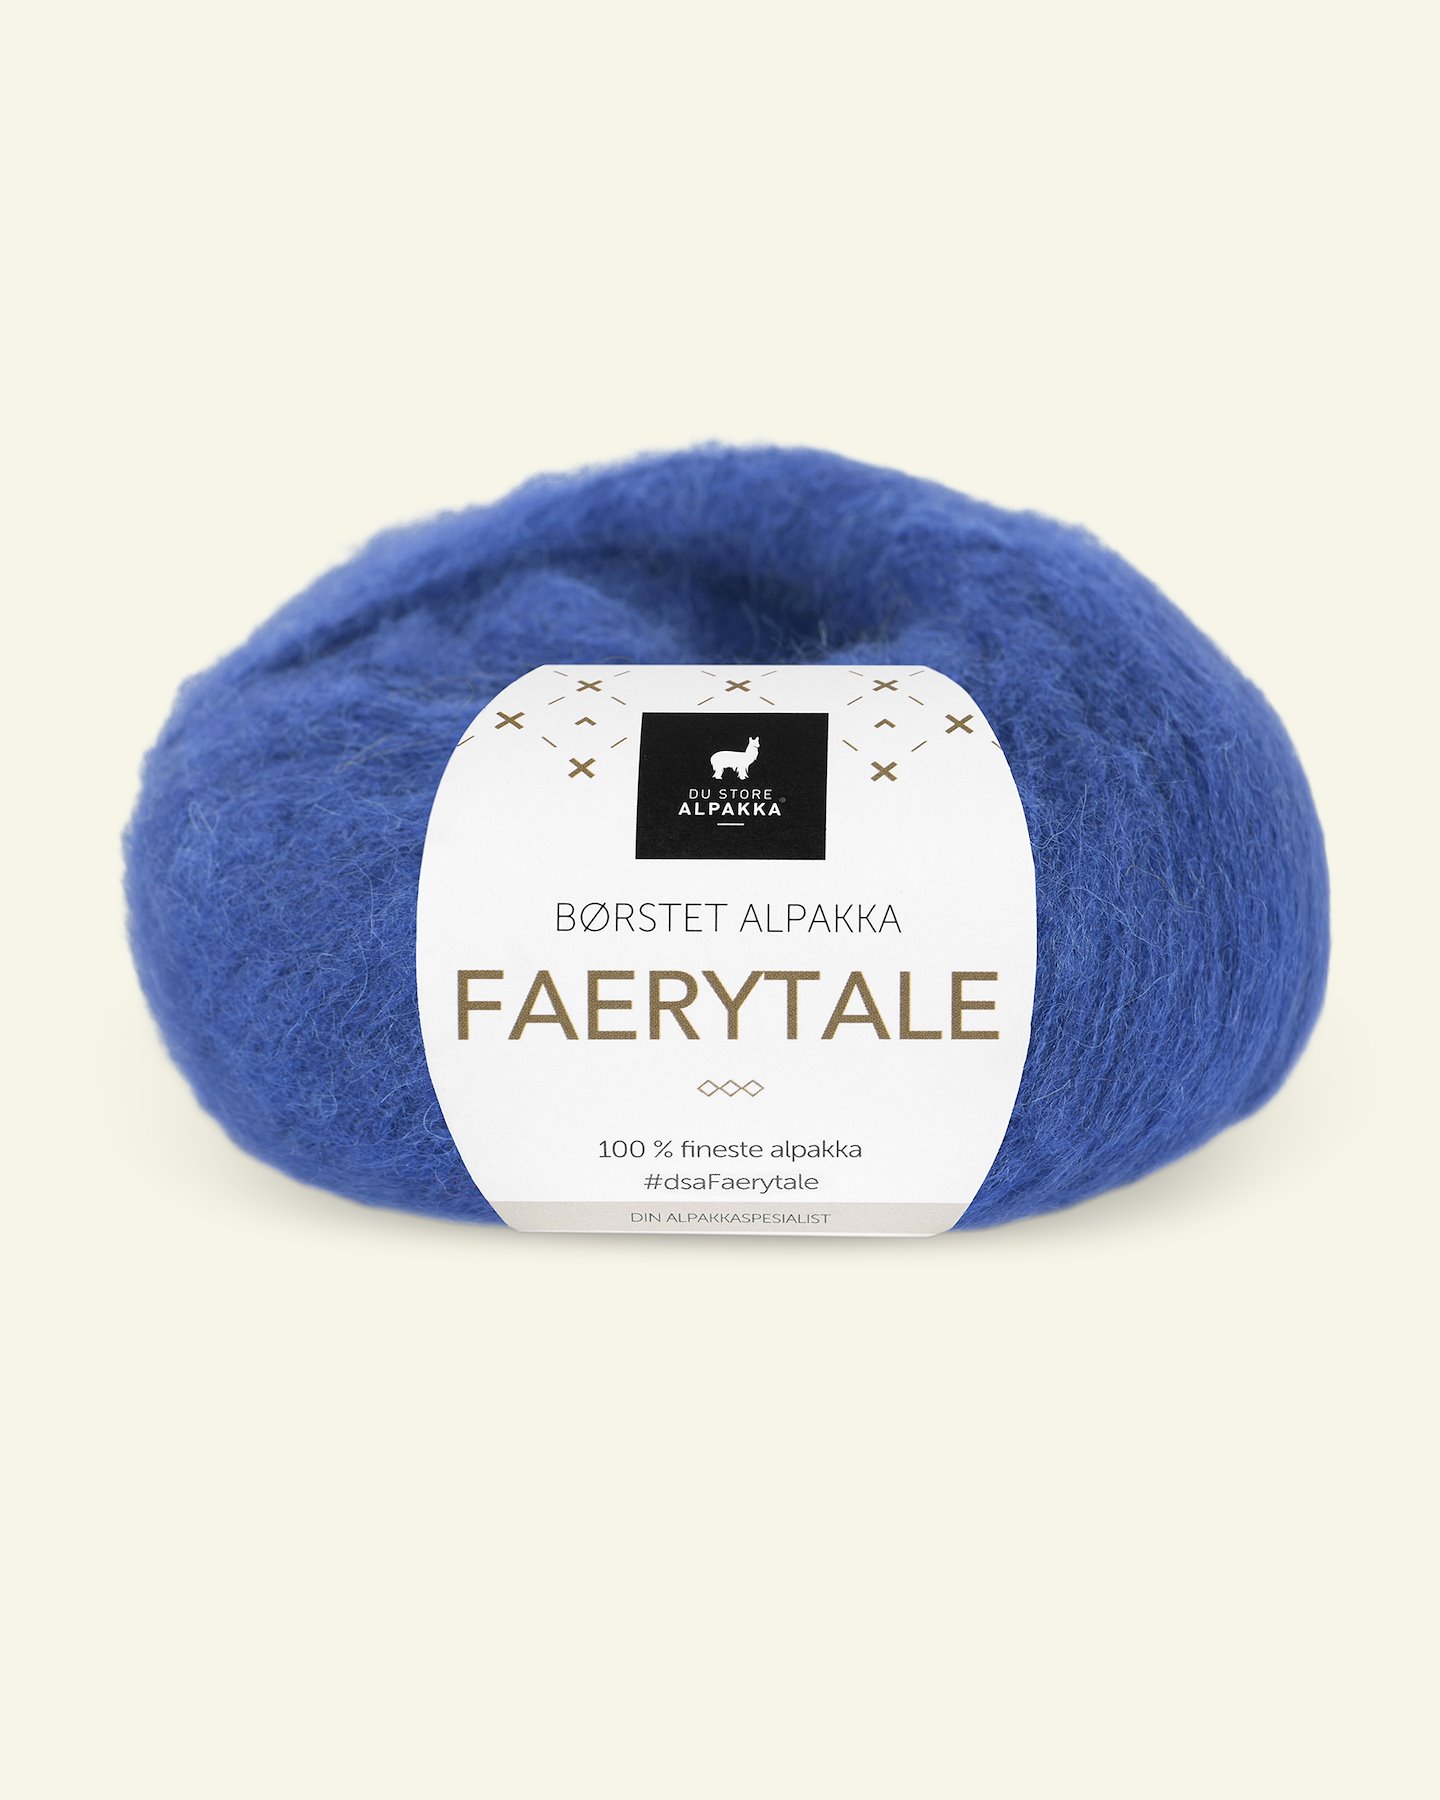 Du Store Alpakka, børsted alpakkagarn "Faerytale", cobolt blå (807) 90000614_pack